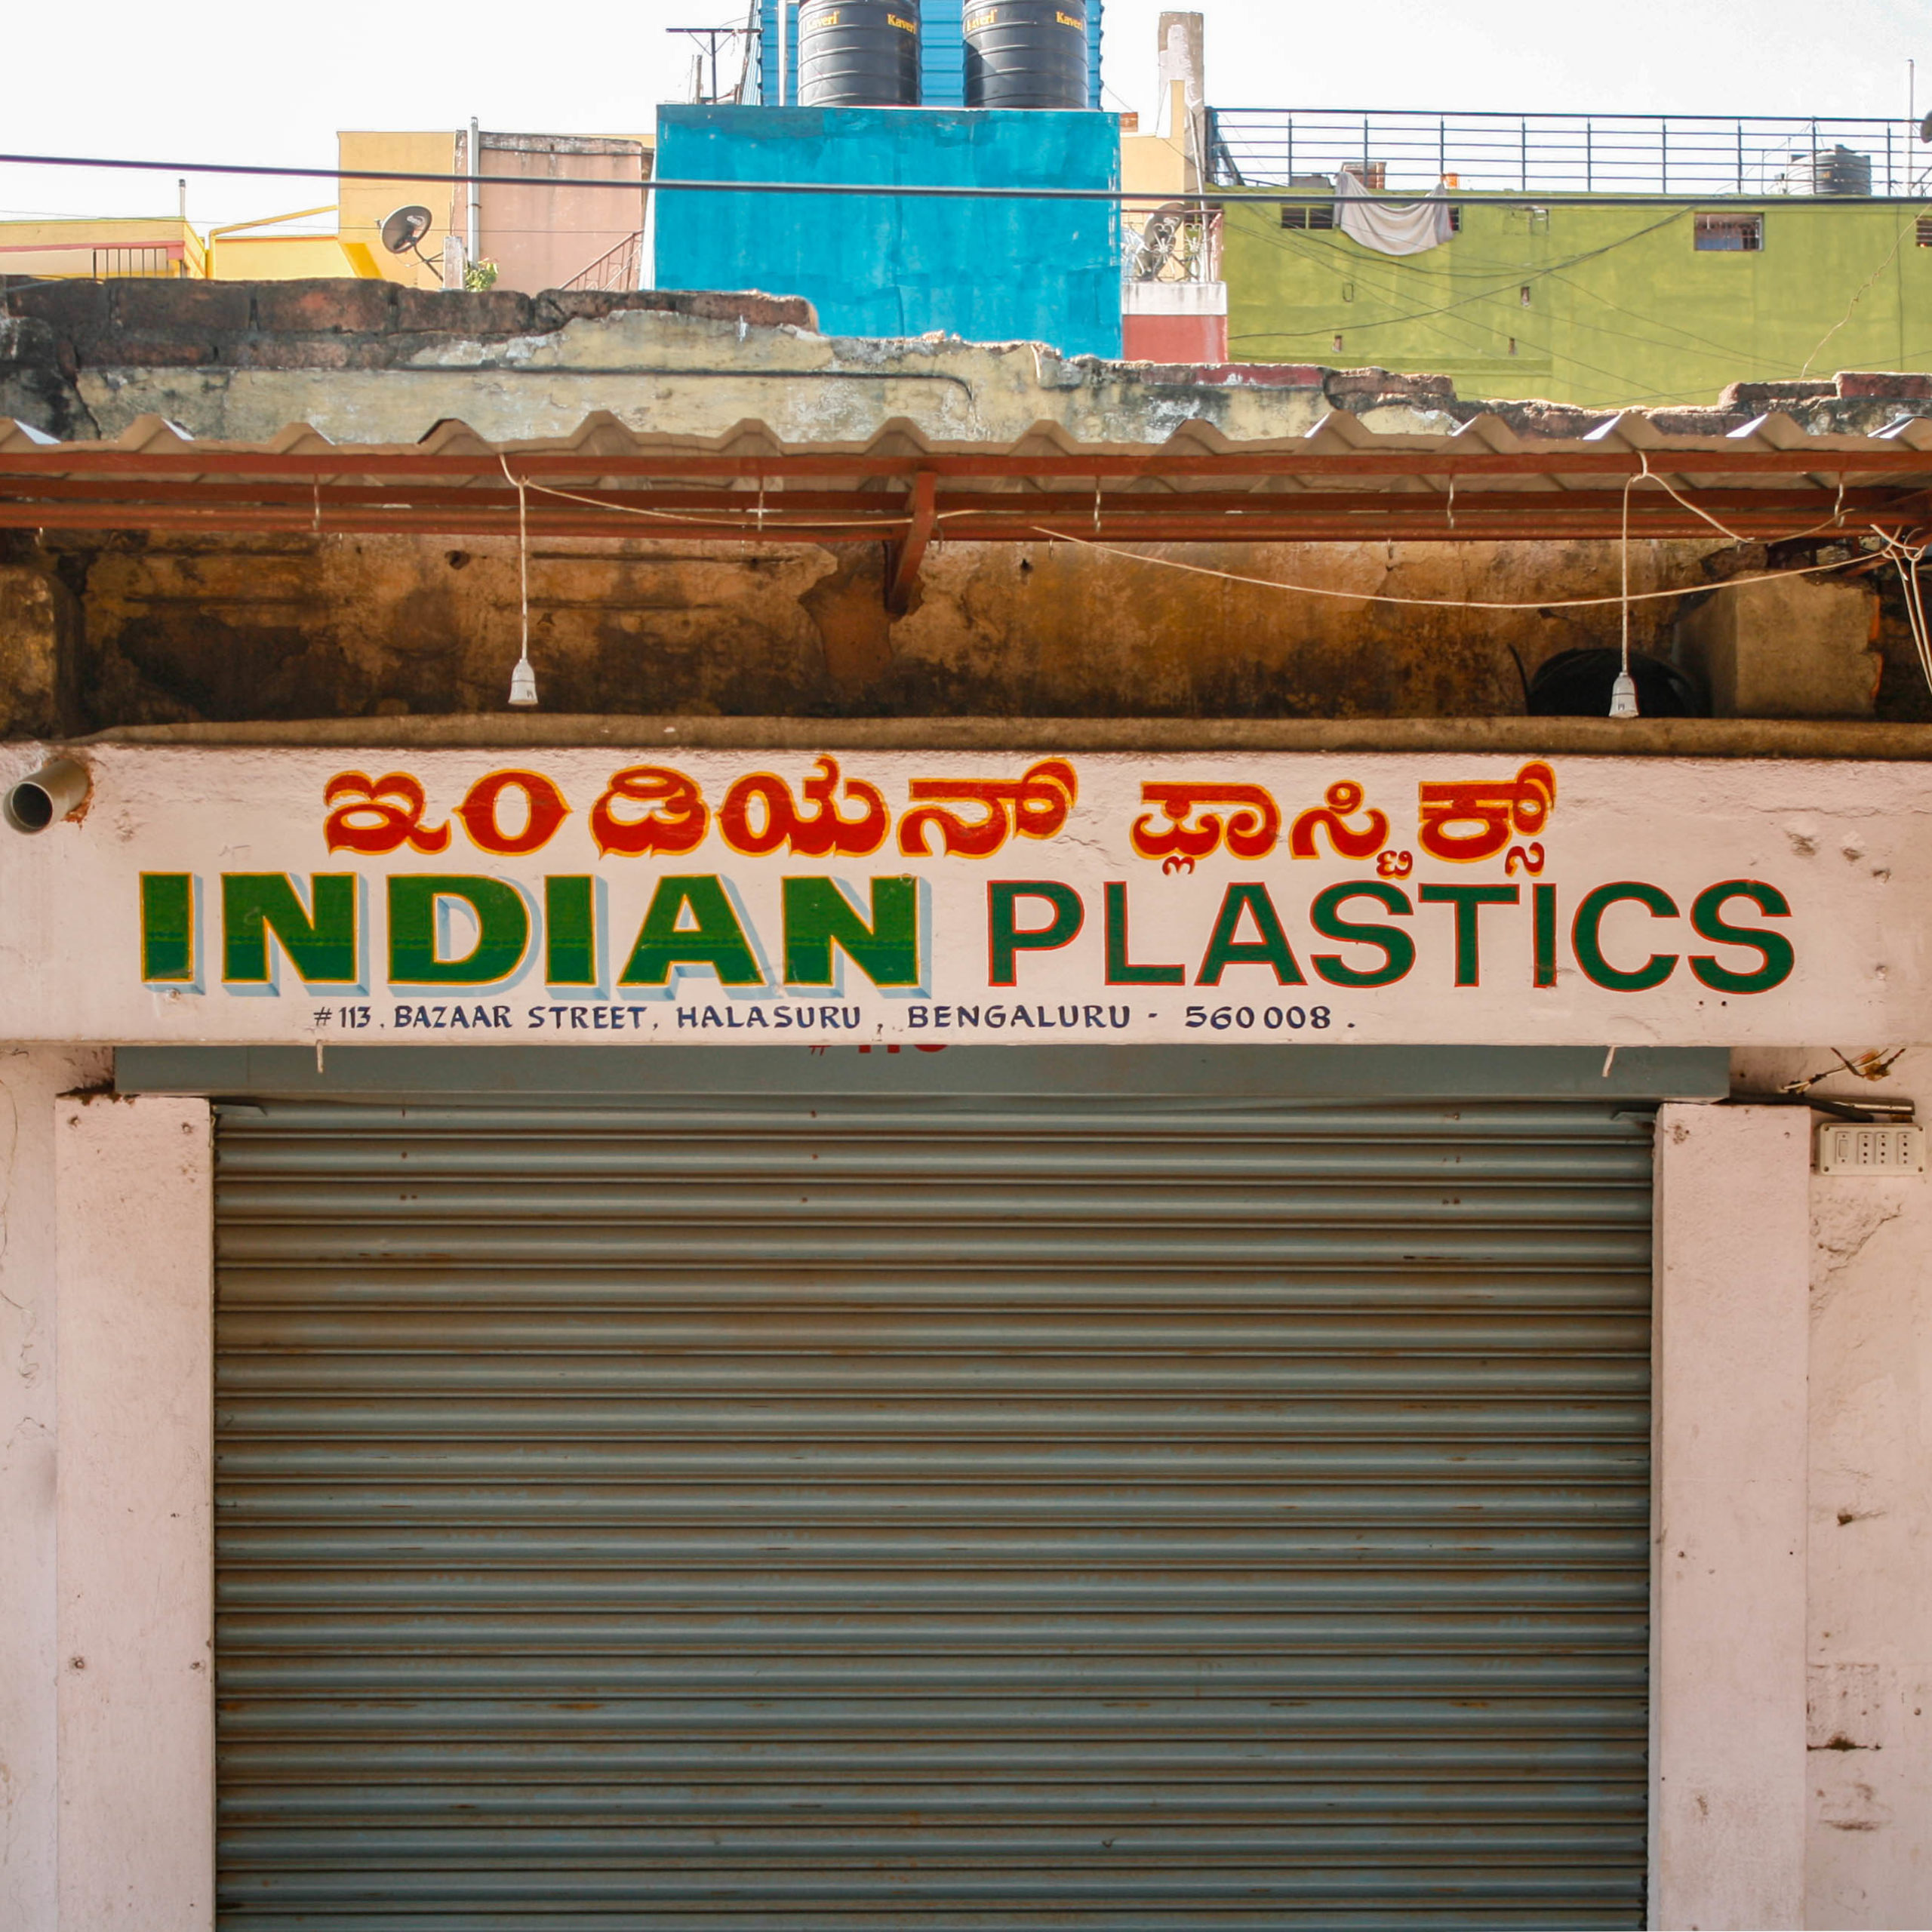 Indian Plastics